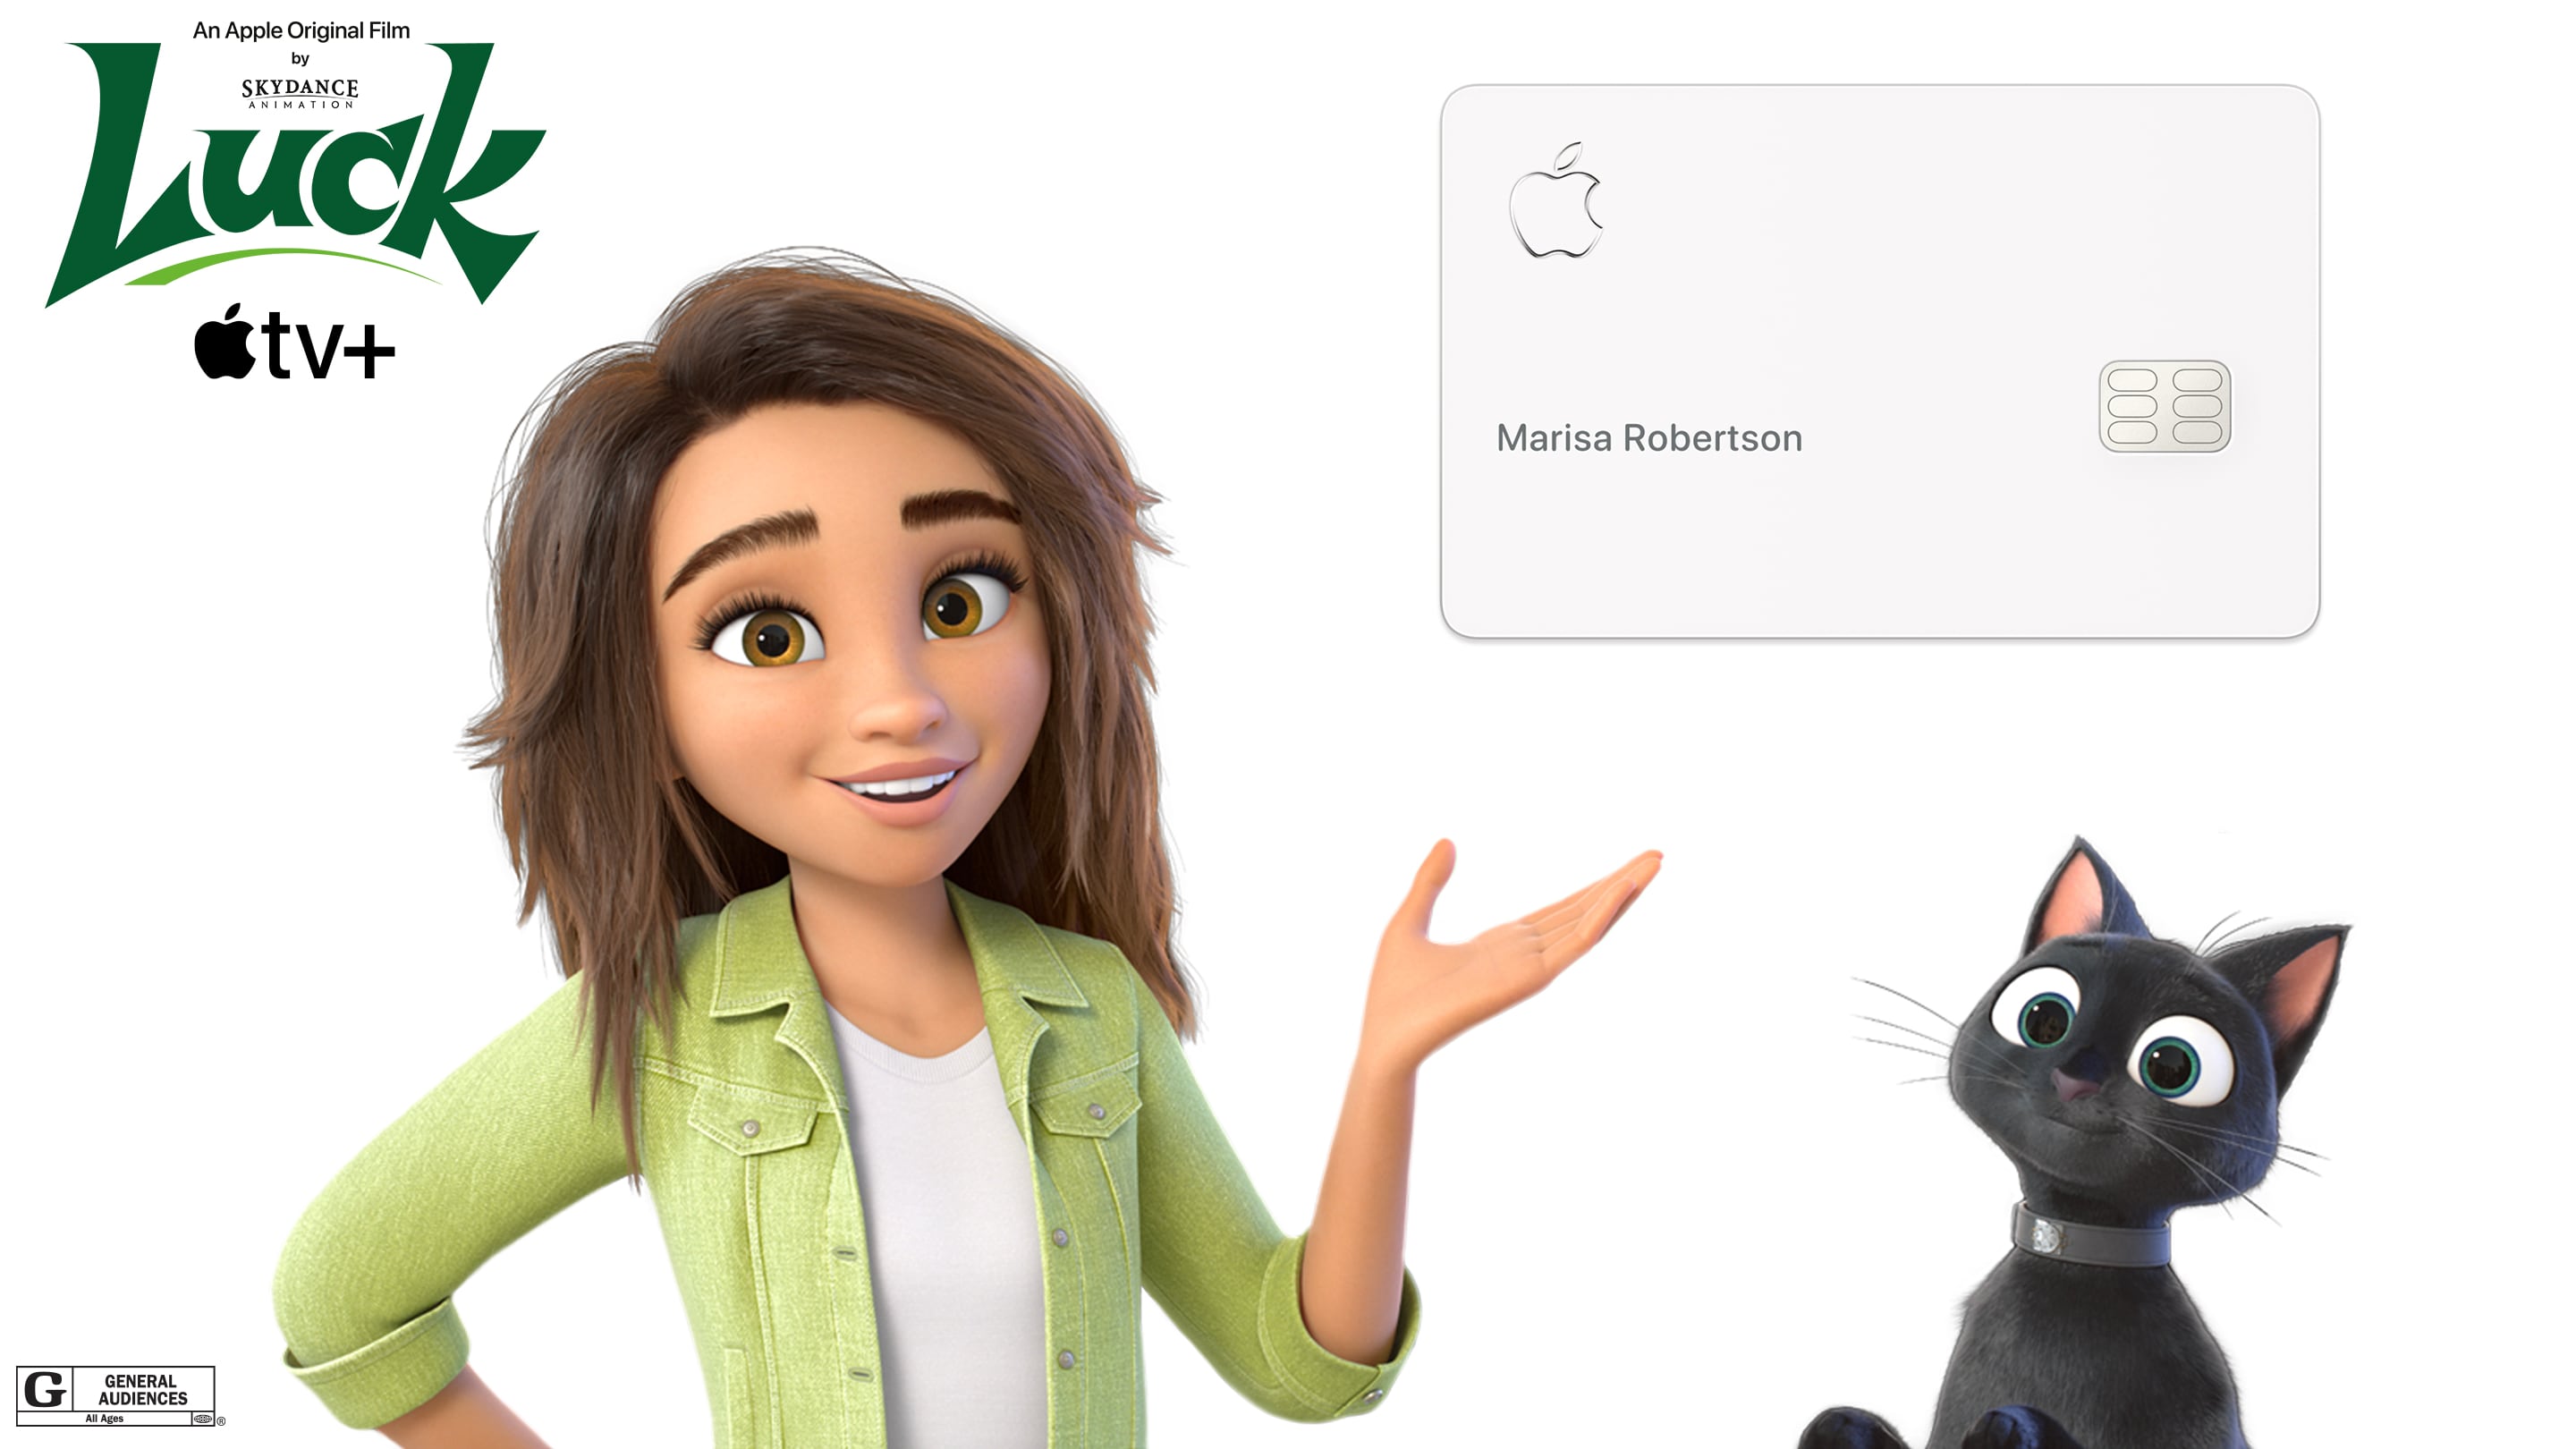 Image marketing promouvant trois mois gratuits d'Apple TV+ aux détenteurs d'une Apple Card dans le cadre de la campagne marketing pour le film d'animation "Chance"